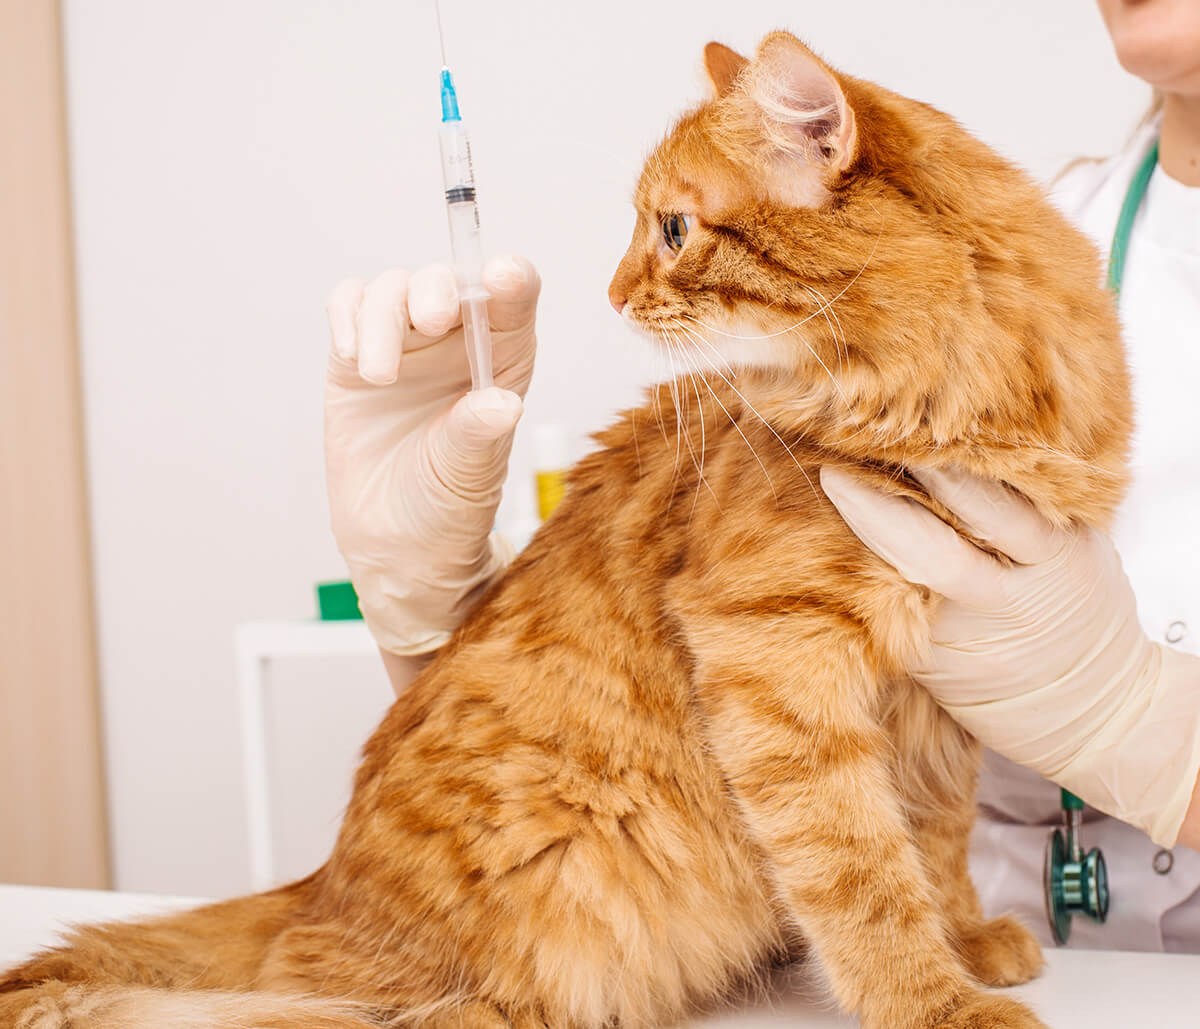 Бесплатные прививки для кошек в москве. Вакцинация кошек. Прививка для кошек. Вакцины для кошек. Сбор на вакцины кошкам.